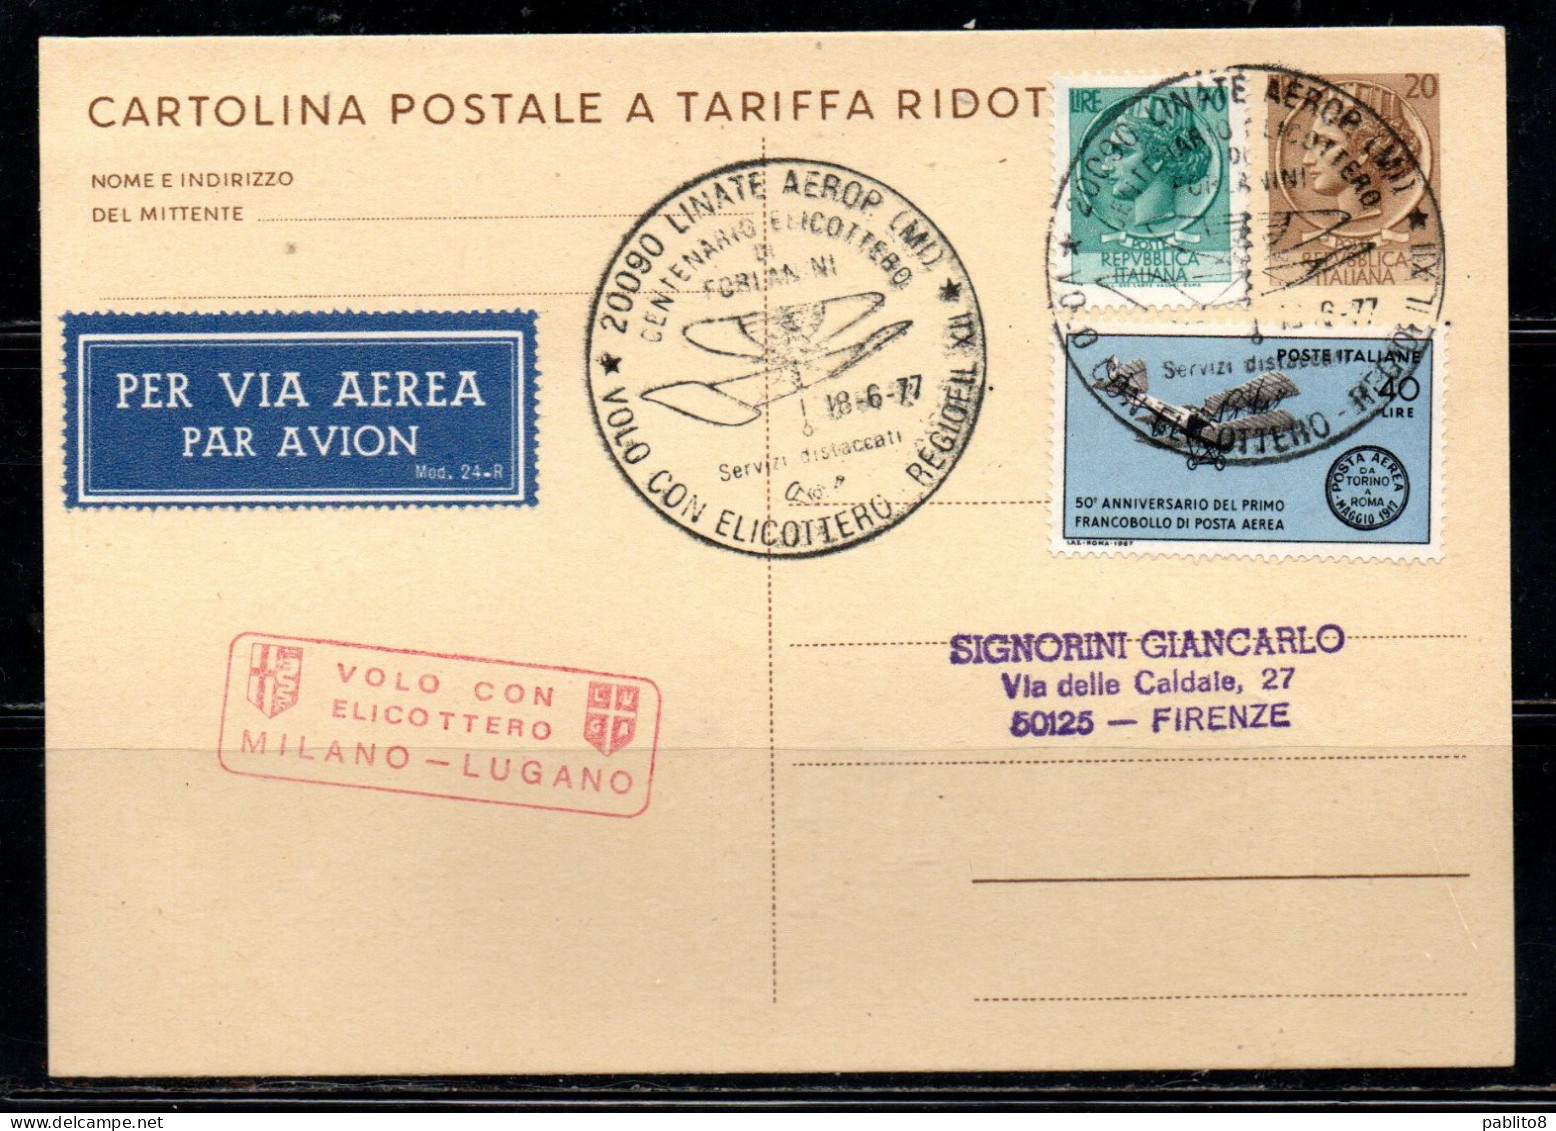 ITALIA REPUBBLICA ITALY REPUBLIC CARTOLINA POSTALE 18-6-1977 VOLO CON ELICOTTERO MILANO - LUGANO FORLANINI VIAGGIATA - Entero Postal